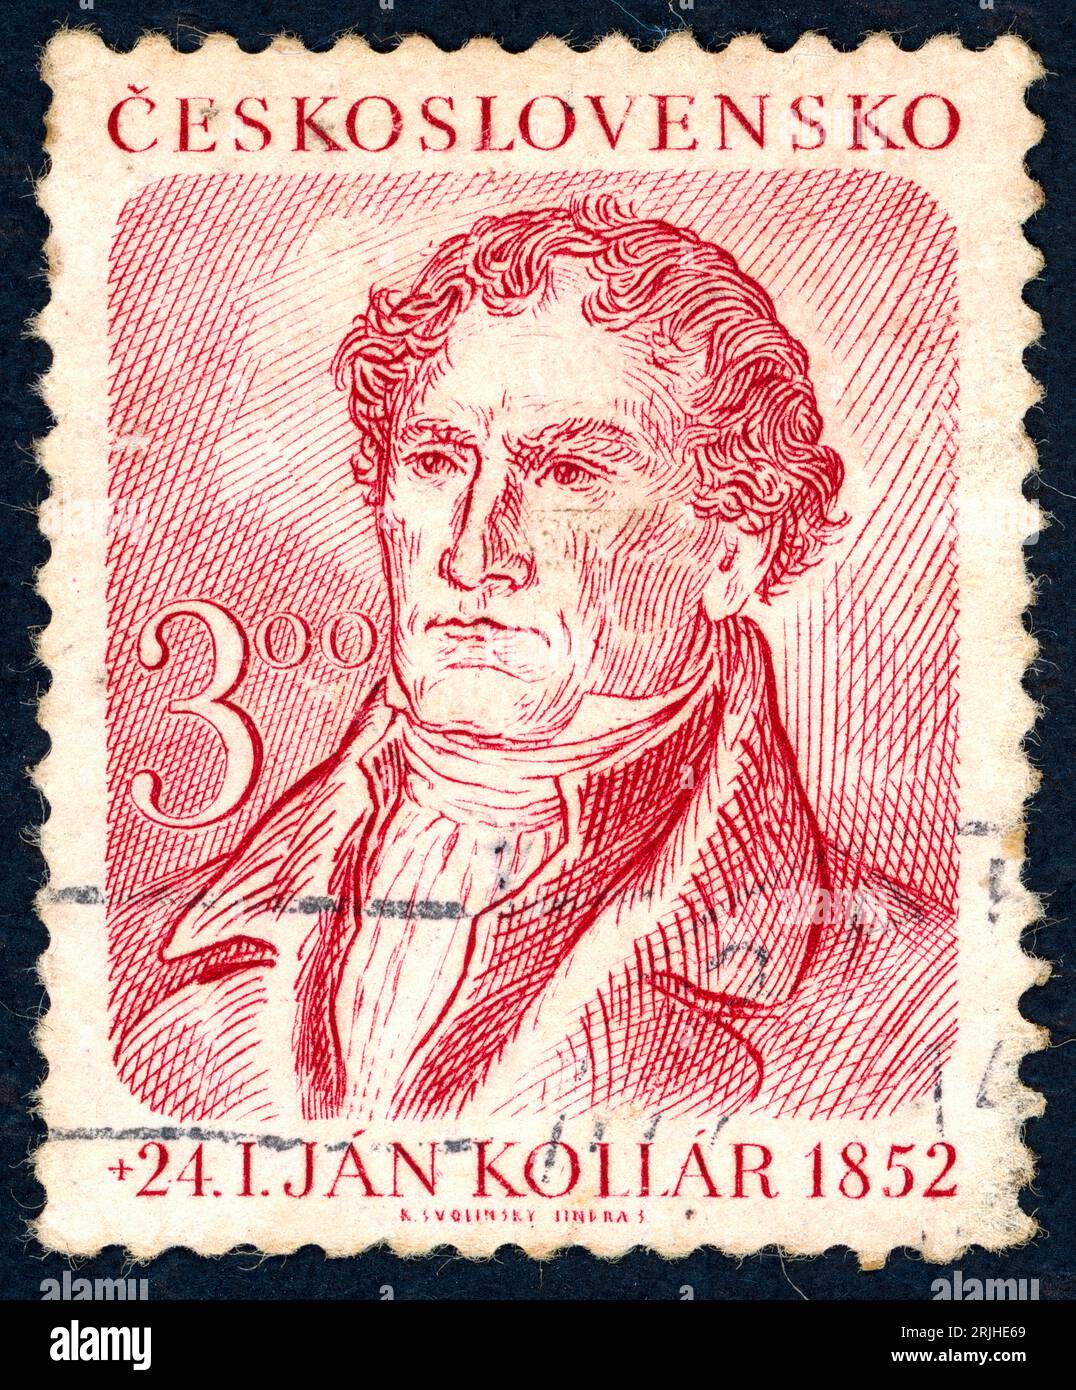 Ján Kollár (1793 – 1852). Timbre-poste émis en Tchécoslovaquie en 1952. Ján Kollár (hongrois : Kollár János) était un écrivain slovaque (principalement poète), archéologue, scientifique, pasteur luthérien, homme politique, et idéologue principal du Pan-slavisme. Banque D'Images